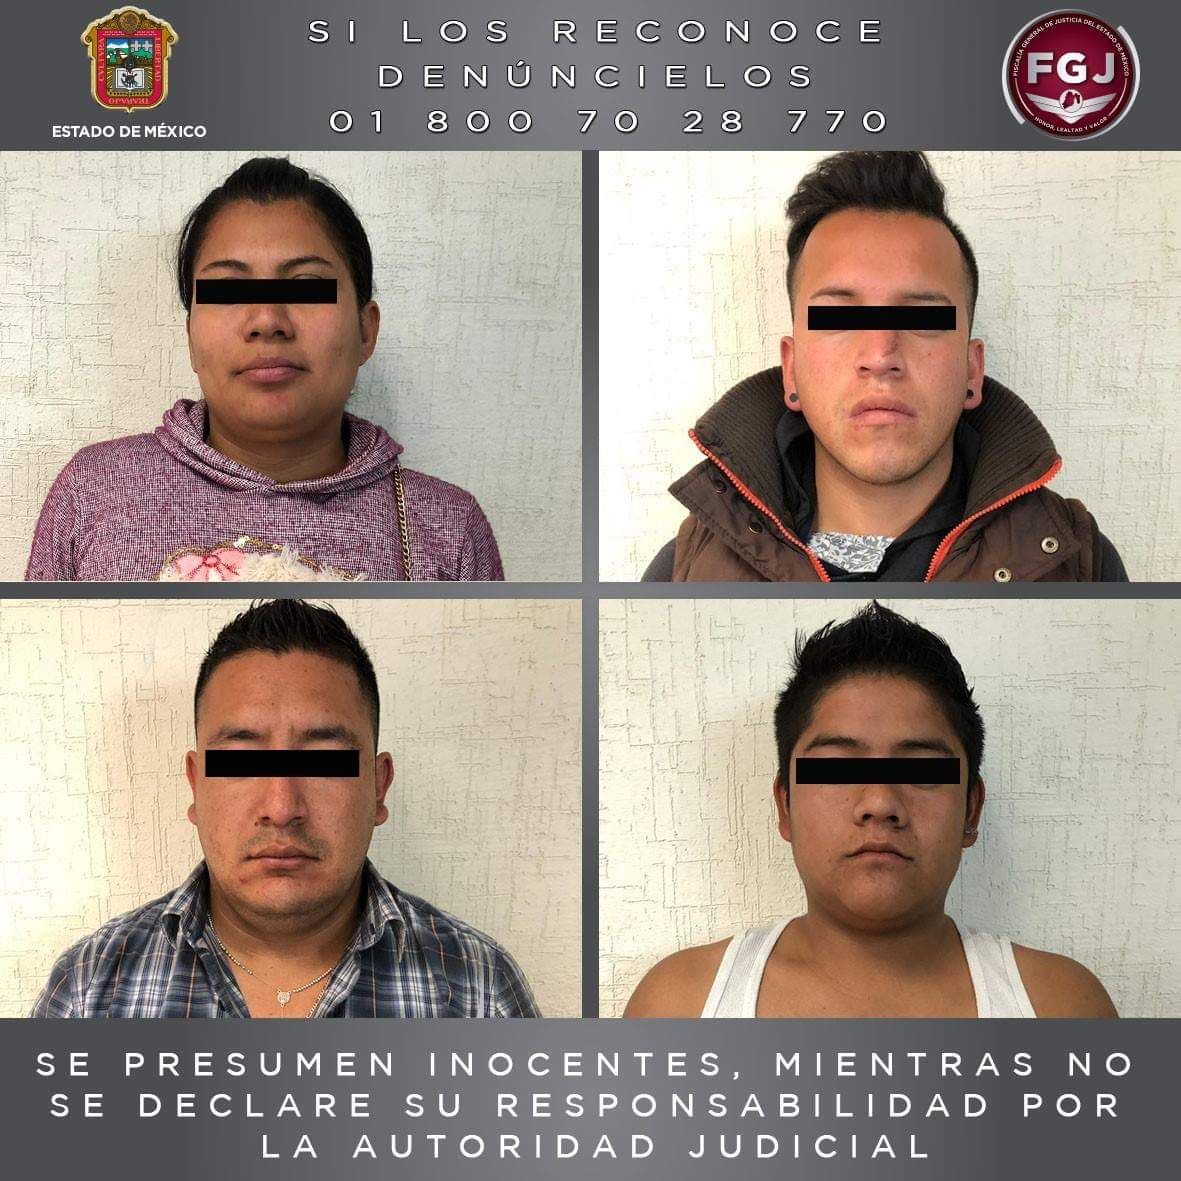 Procesan a cuatro por robo de vehículo con violencia en Texcoco